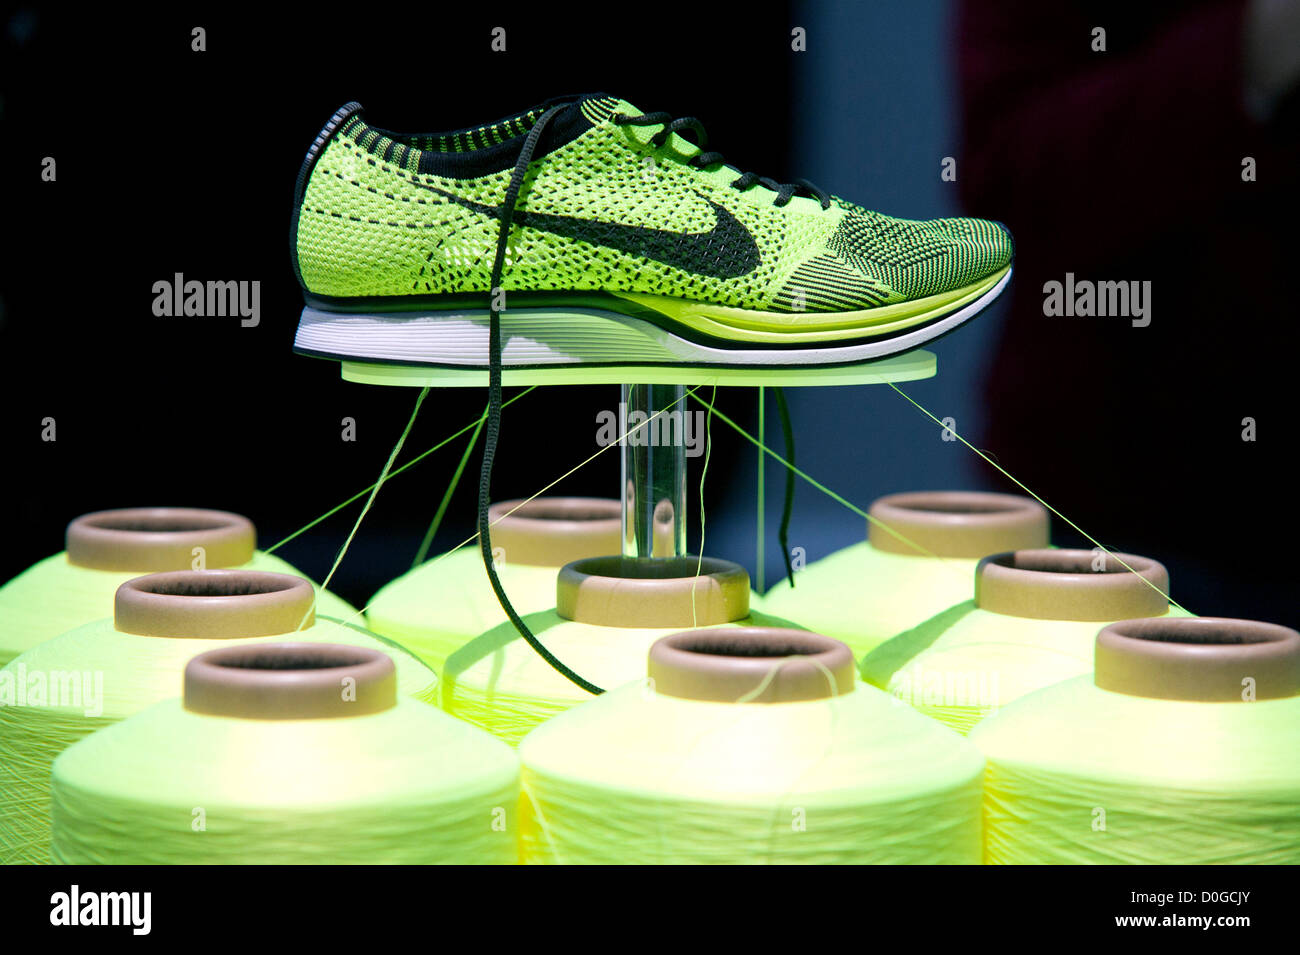 25 de noviembre 2012, Tokio, Japón - La nueva tecnología de zapatillas Nike Flyknit Racer por Inc. está seleccionado como "Buen diseño 100 Mejores'. Good Design Award 2012